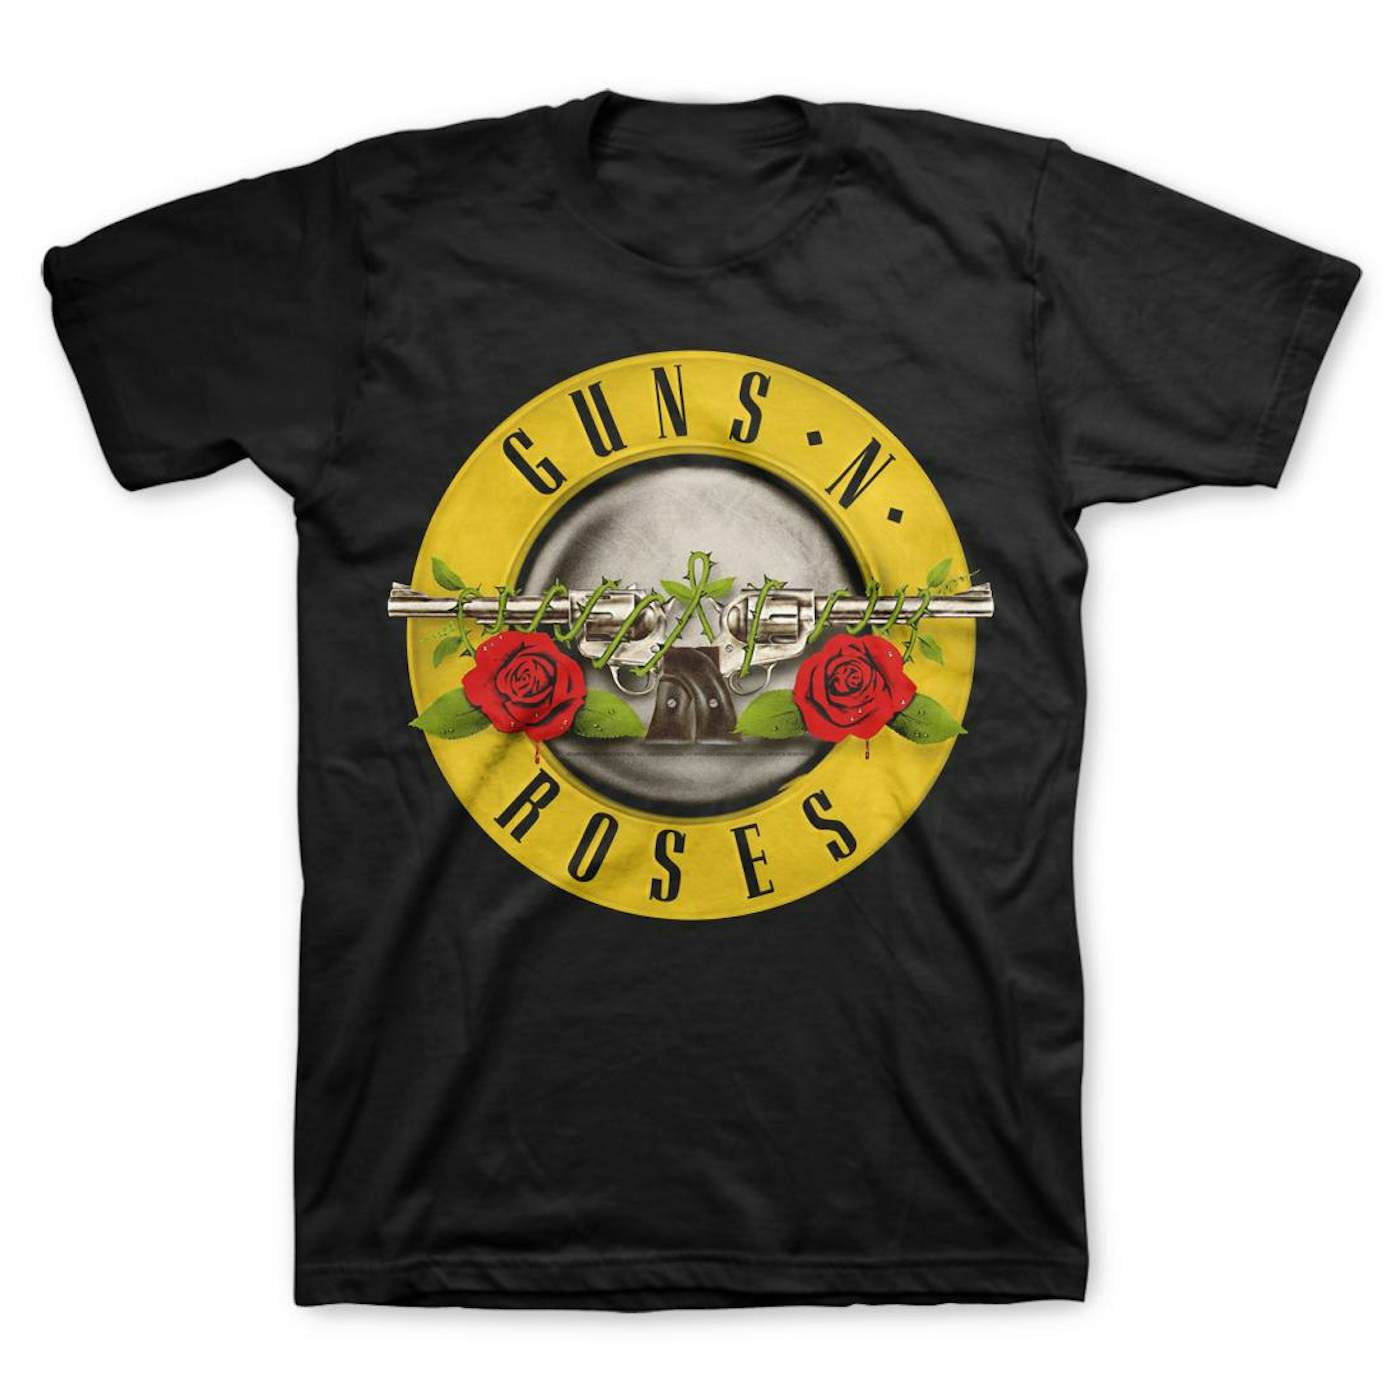 Guns N' Roses - T-Shirt - Guns N Roses (Black) (Bolur)